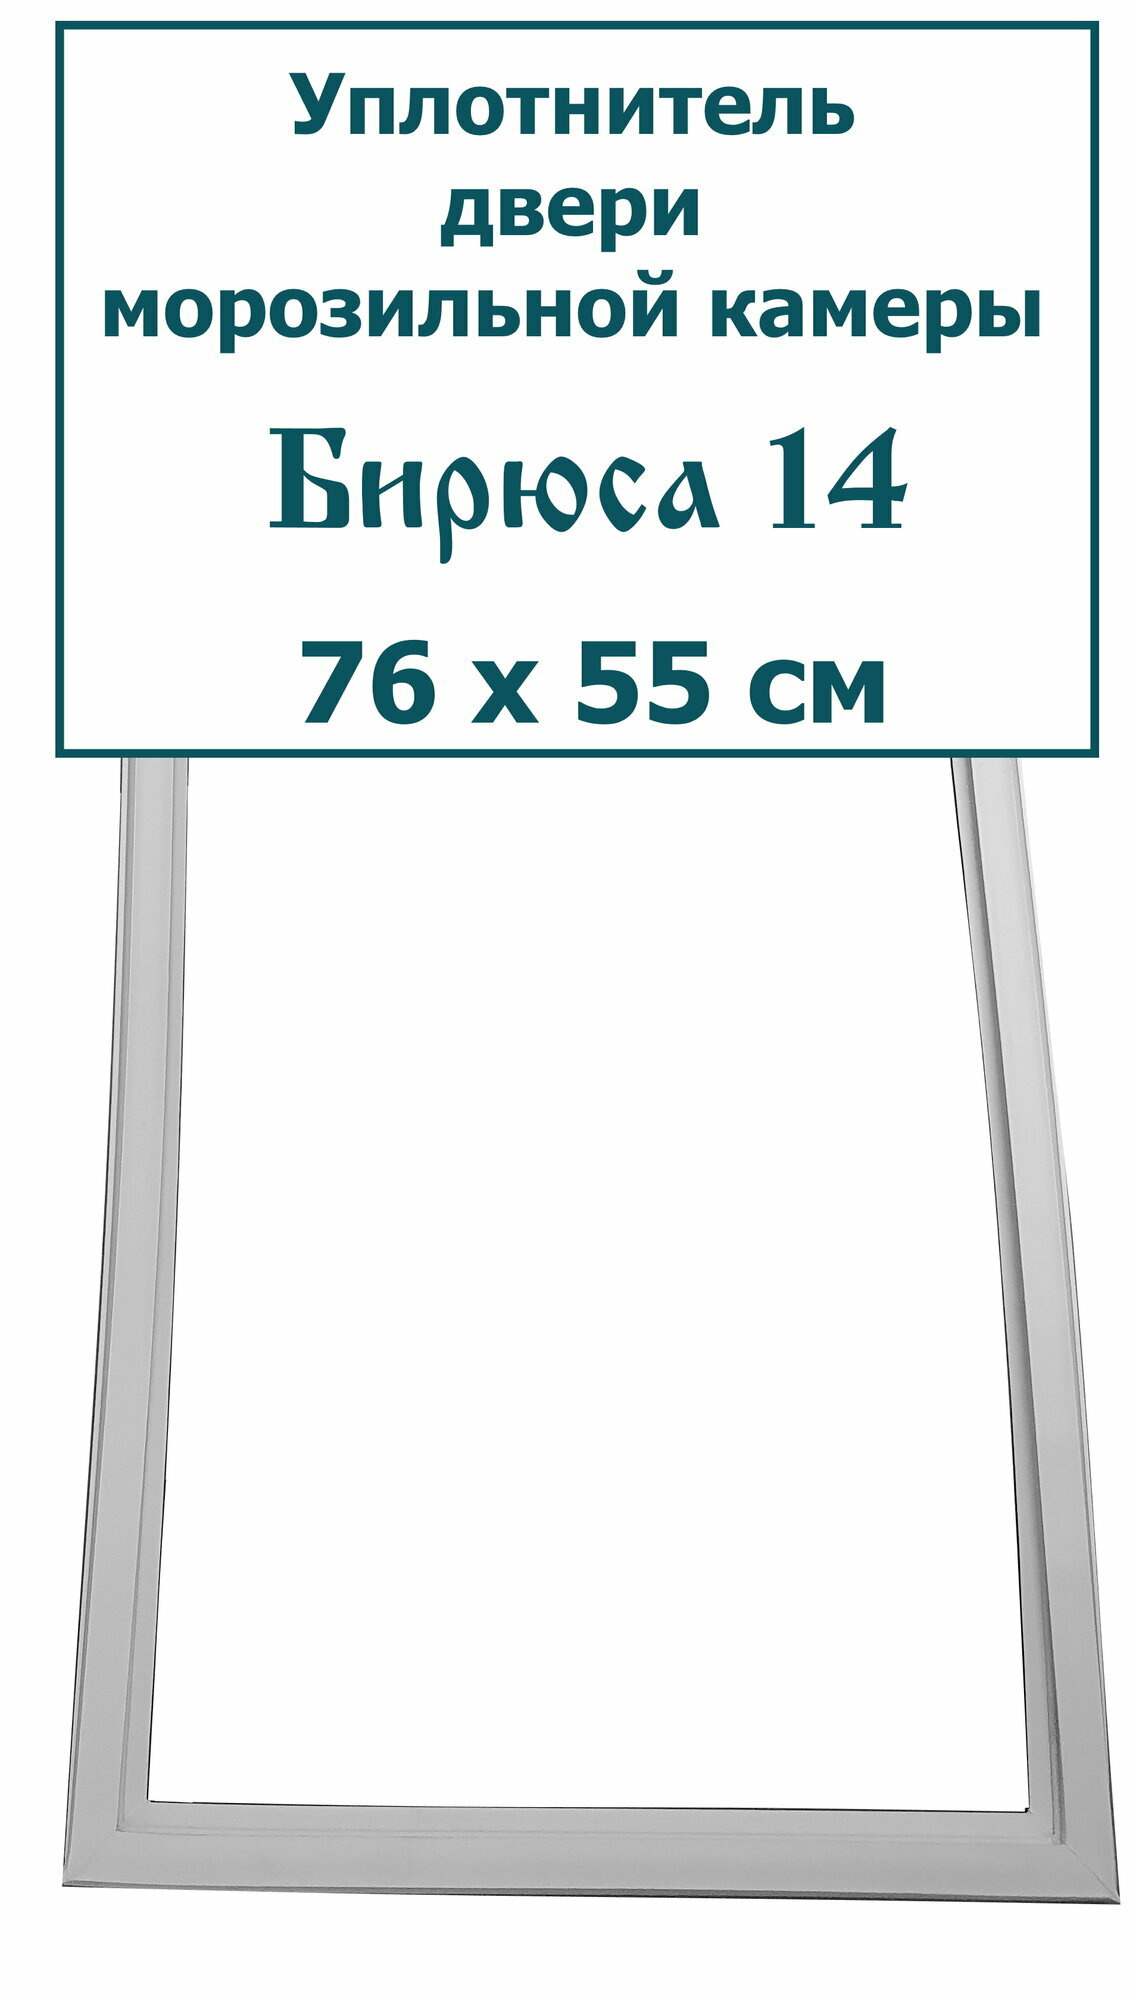 Уплотнитель двери морозильной камеры Бирюса 14 (76 x 55 см)